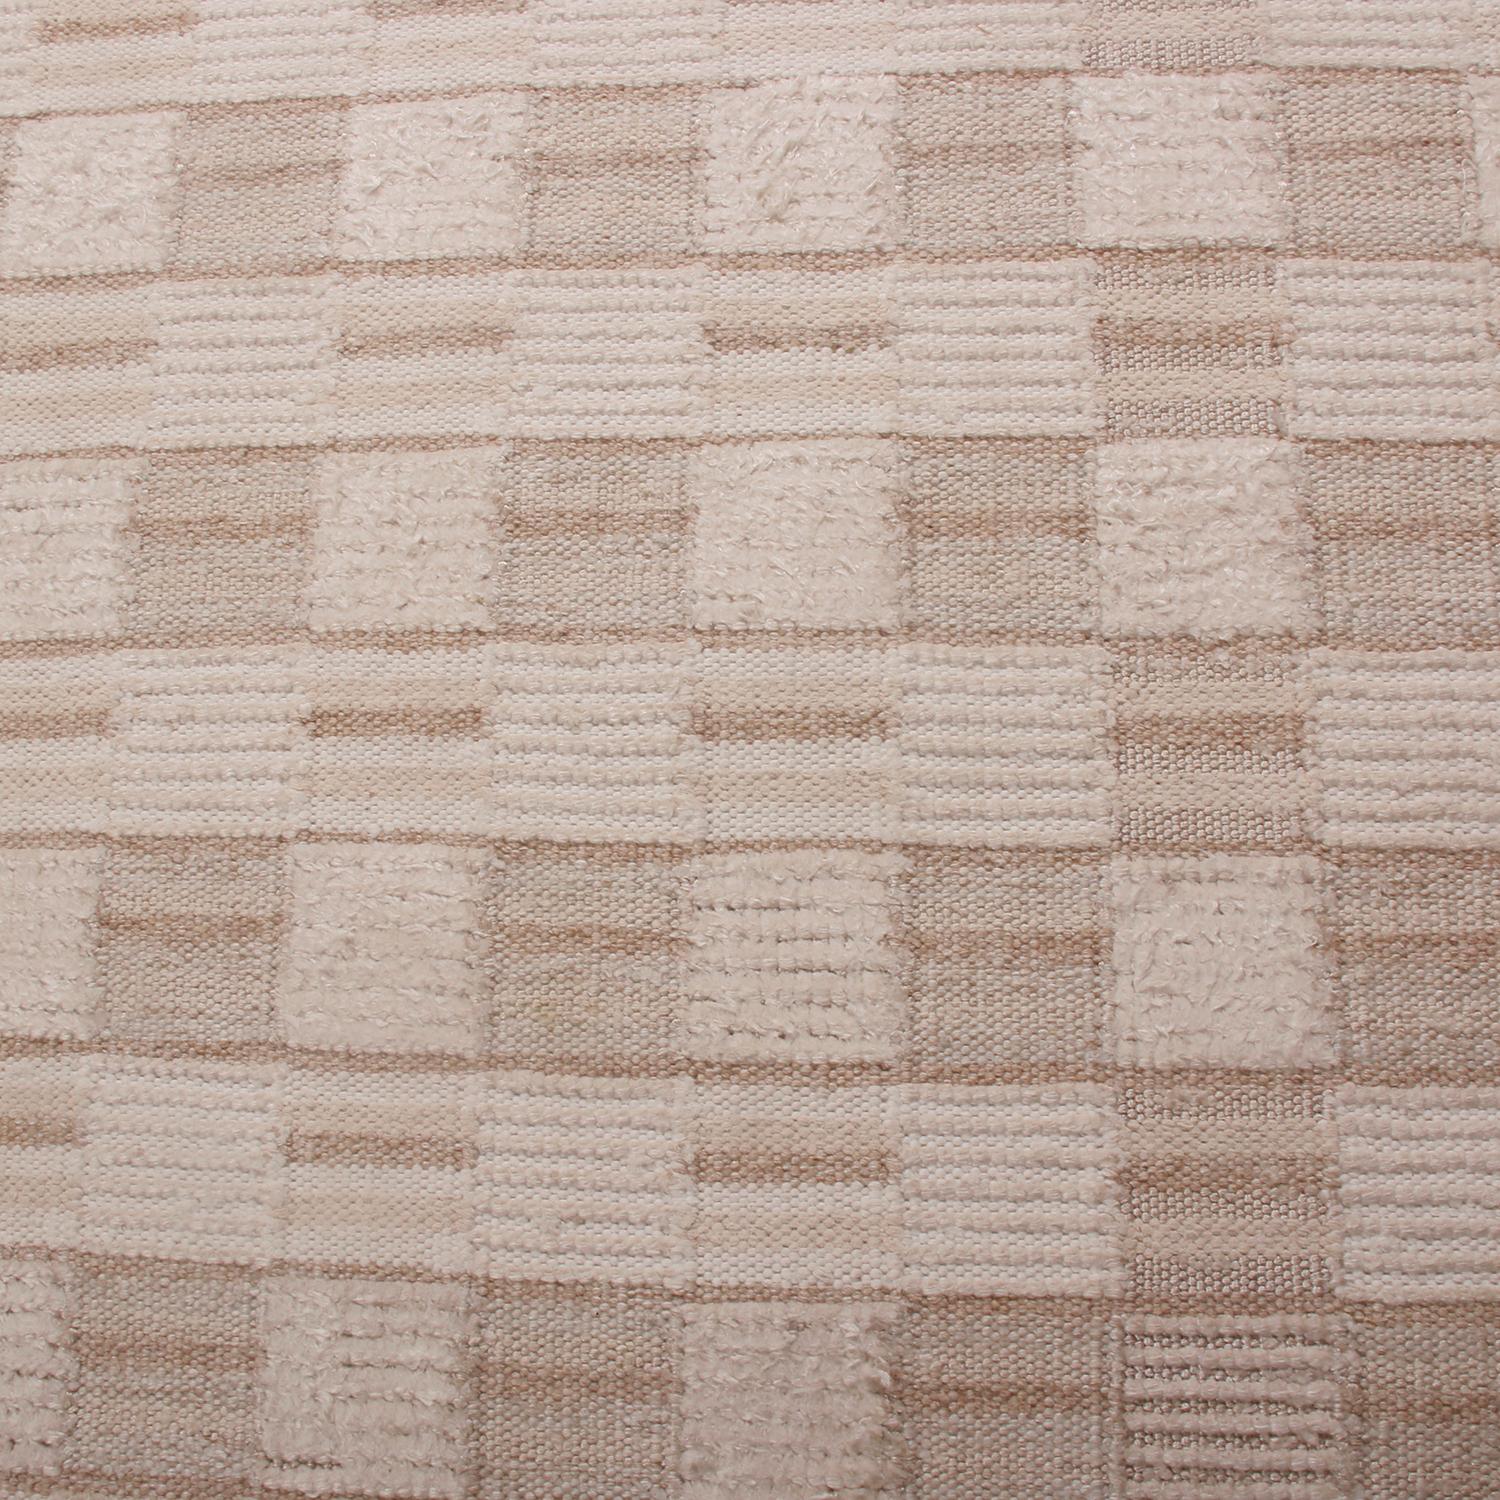 Scandinavian Modern Rug & Kilim’s Scandinavian Inspired Geometric Beige-Brown Wool Rug For Sale